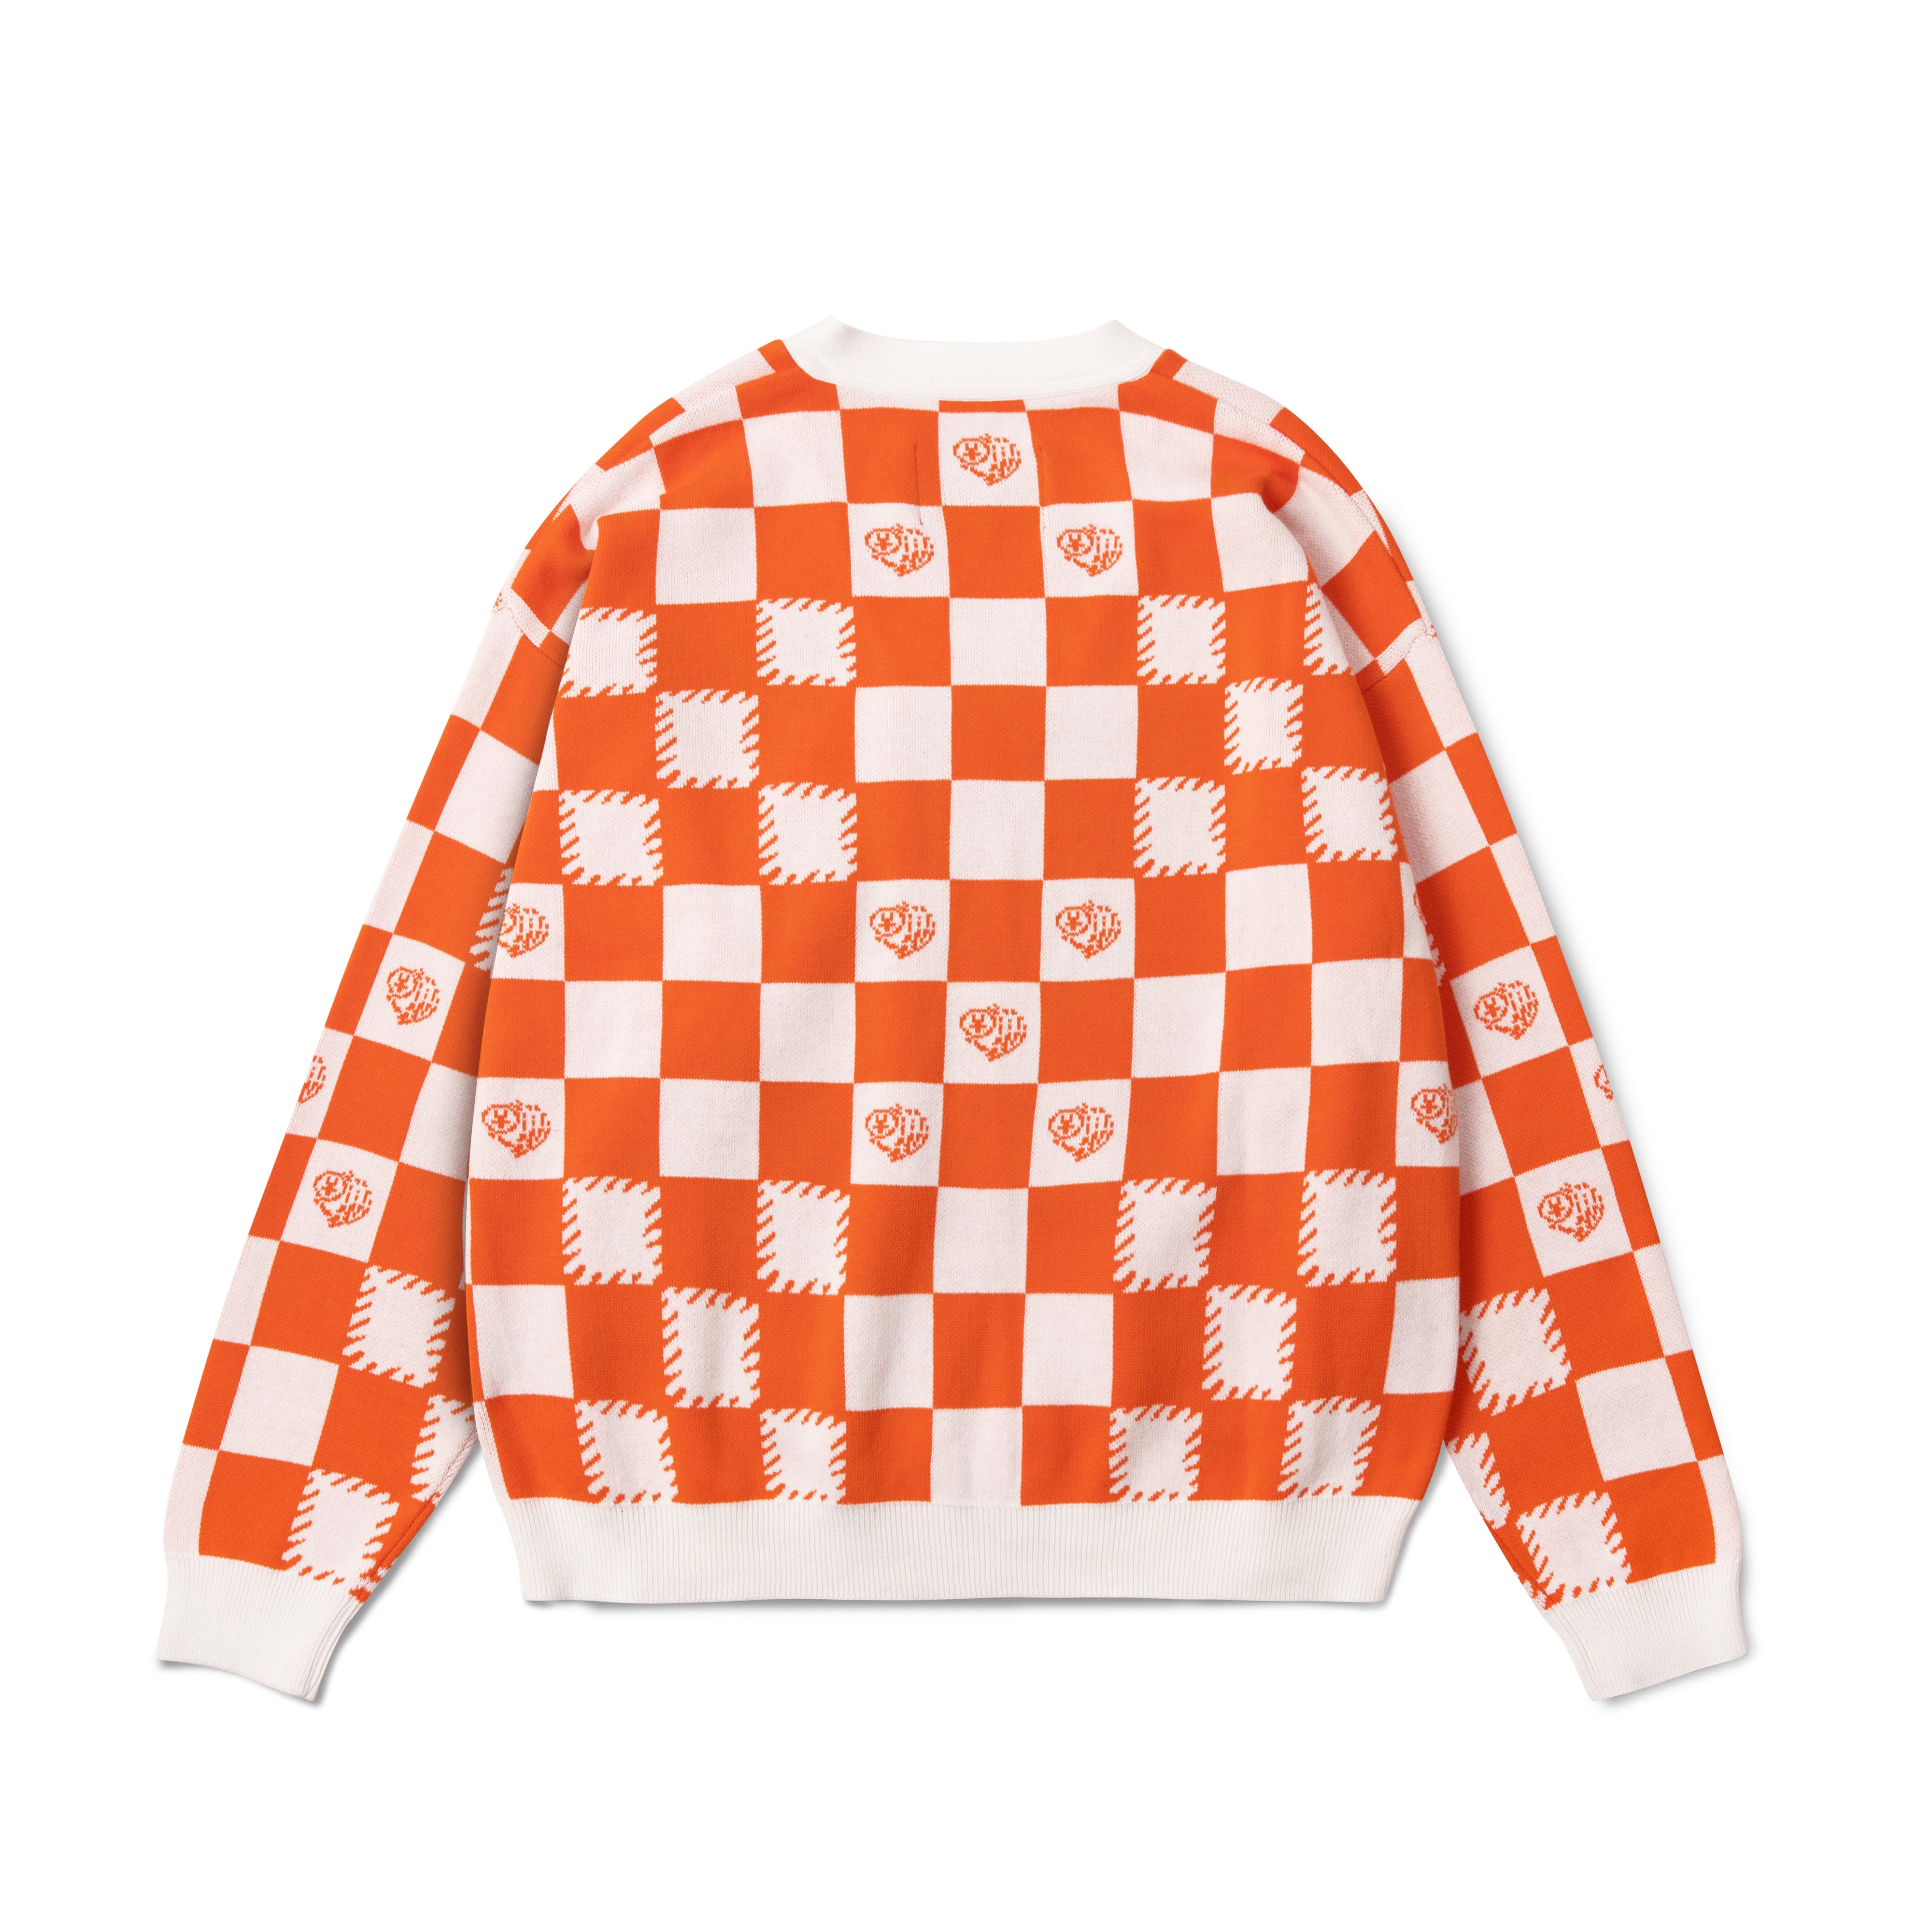 DirtyCoins Áo Khoác Checkerboard Knit Cardigan - Orange